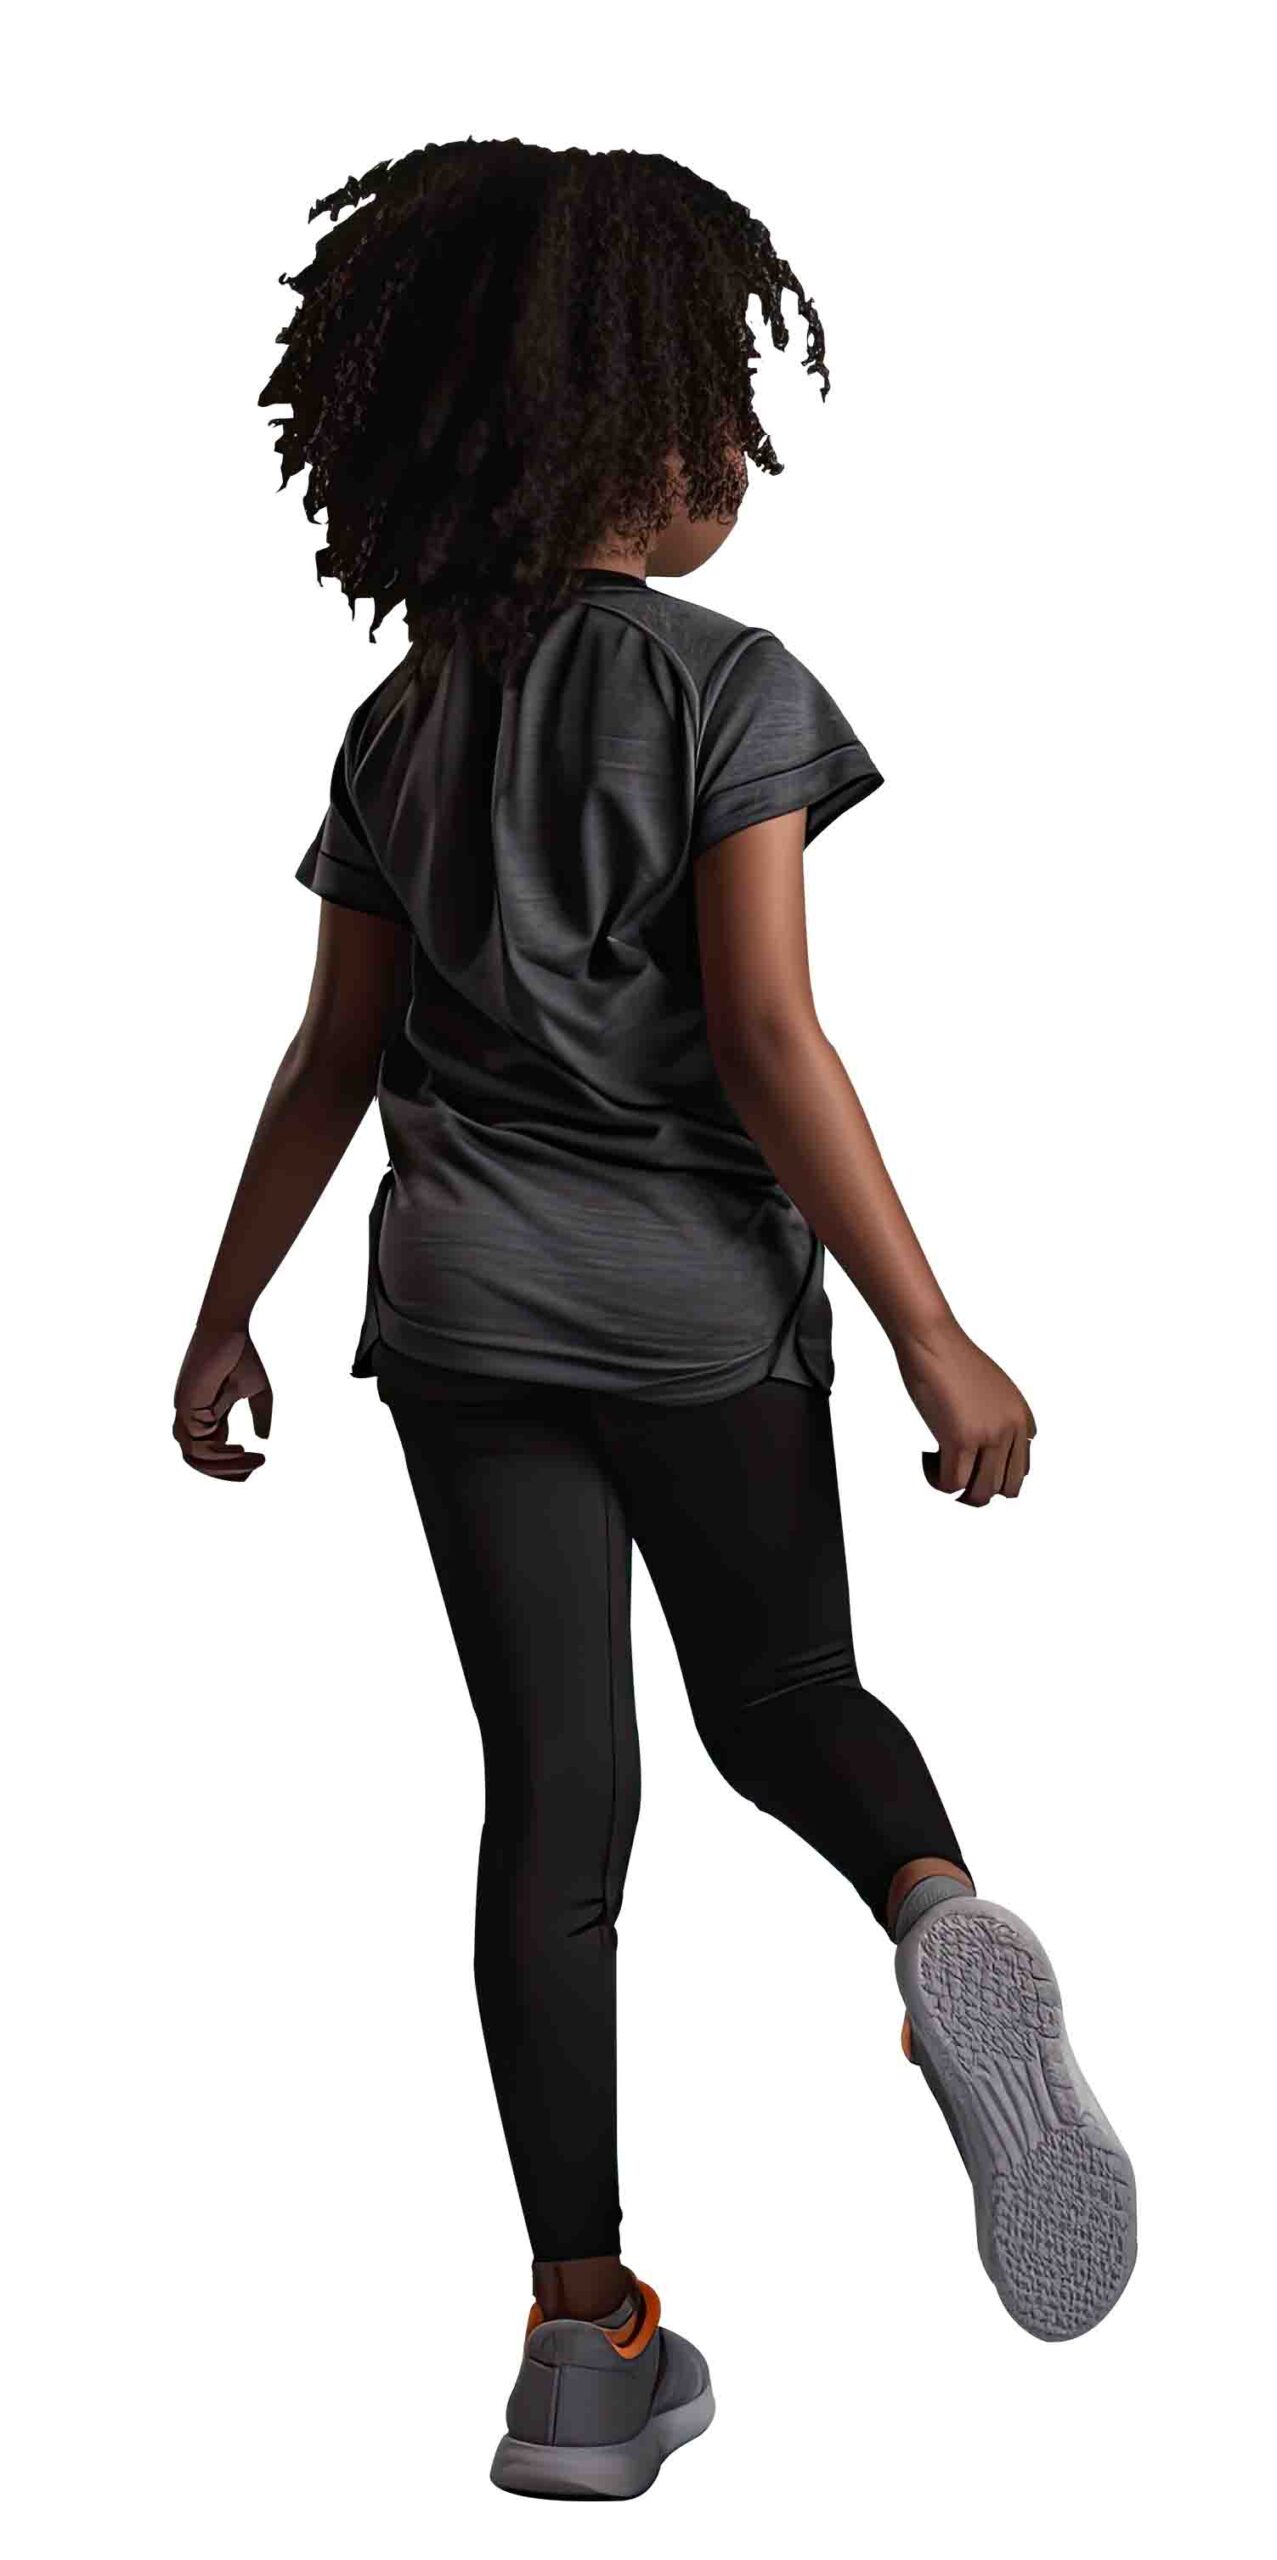 African Girl black jogging back